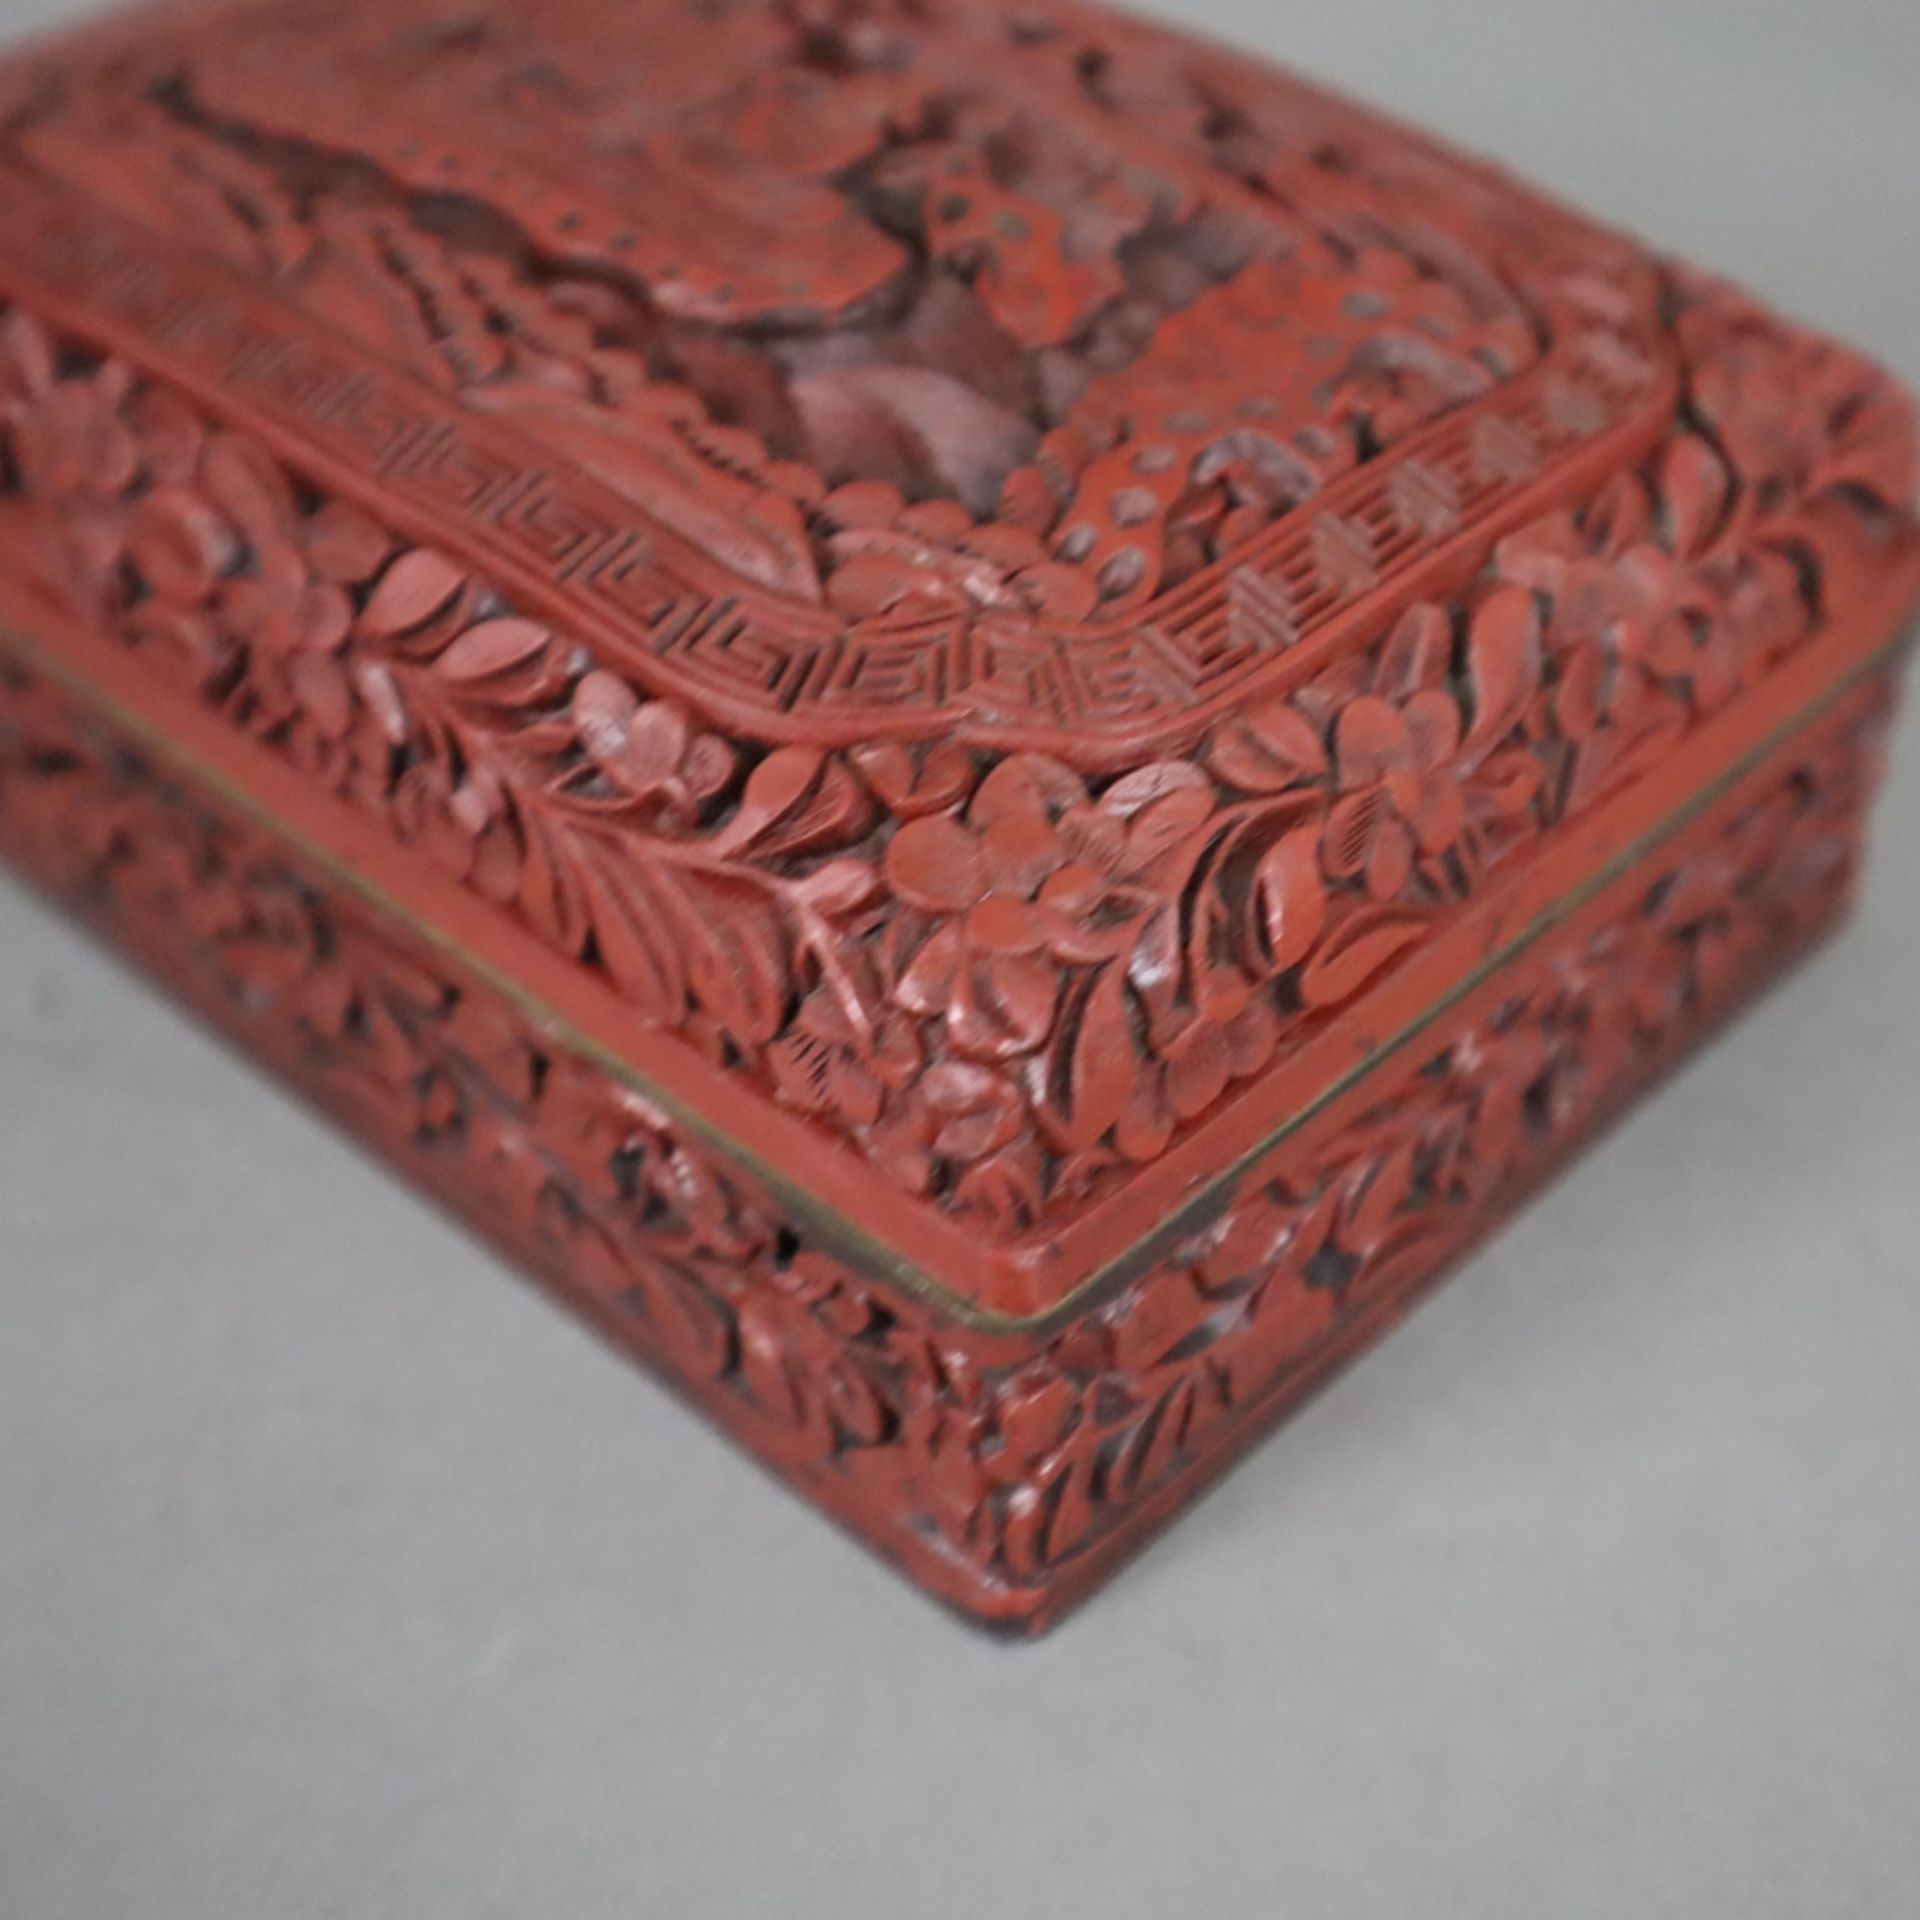 Schnitzlack-Deckeldose - China, Qing-Dynastie, Außenwandung mit rotem Schnitzlack, Unter- und Innen - Image 5 of 7